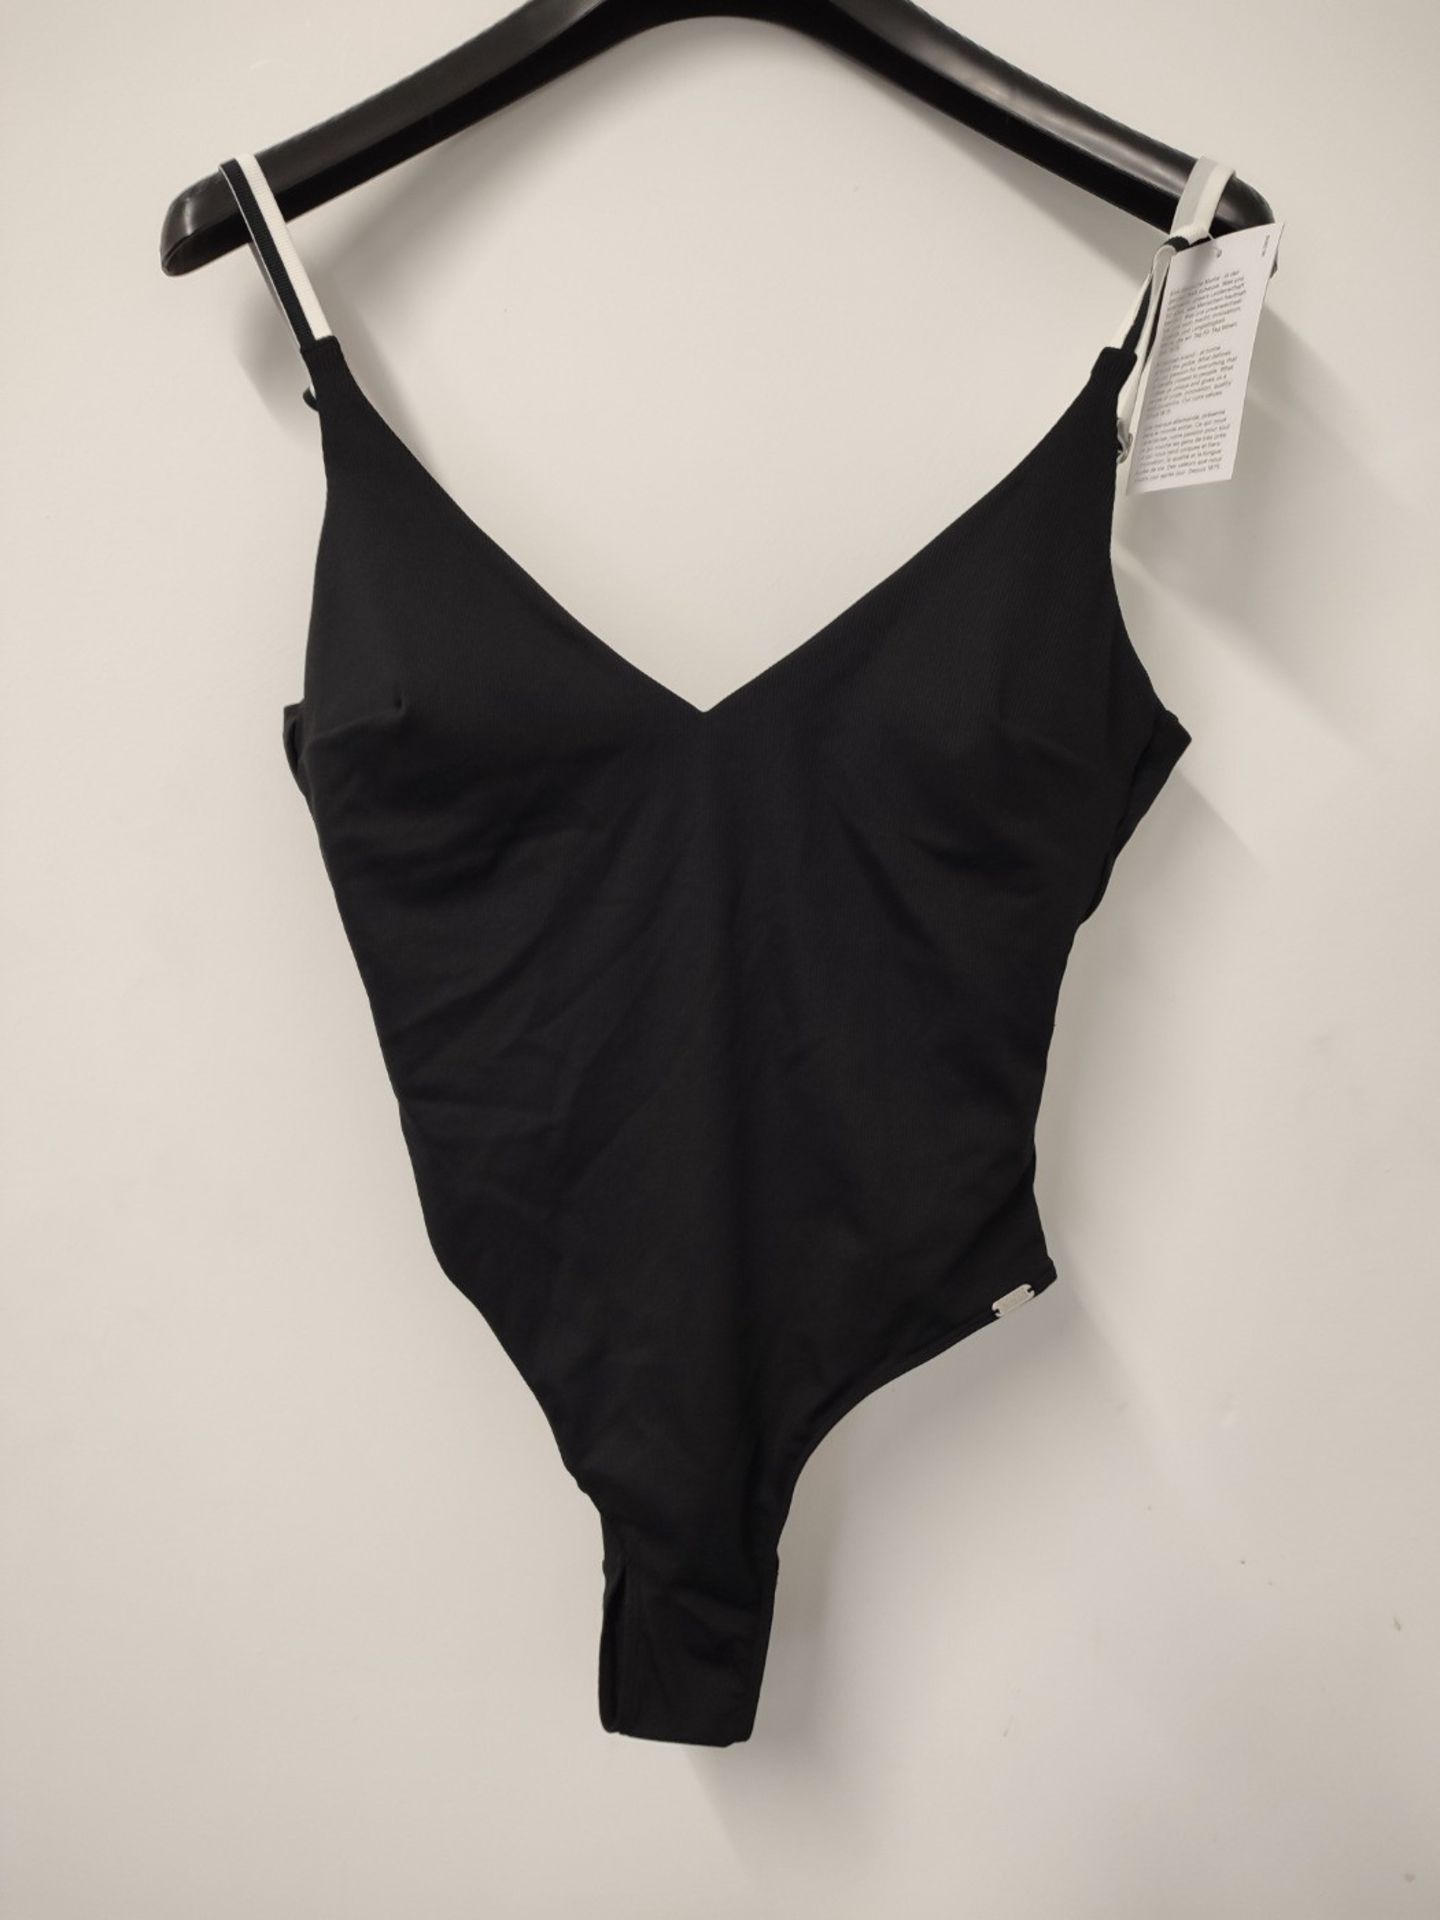 Schiesser Women's Badeanzug One Piece Swimsuit, Black, M